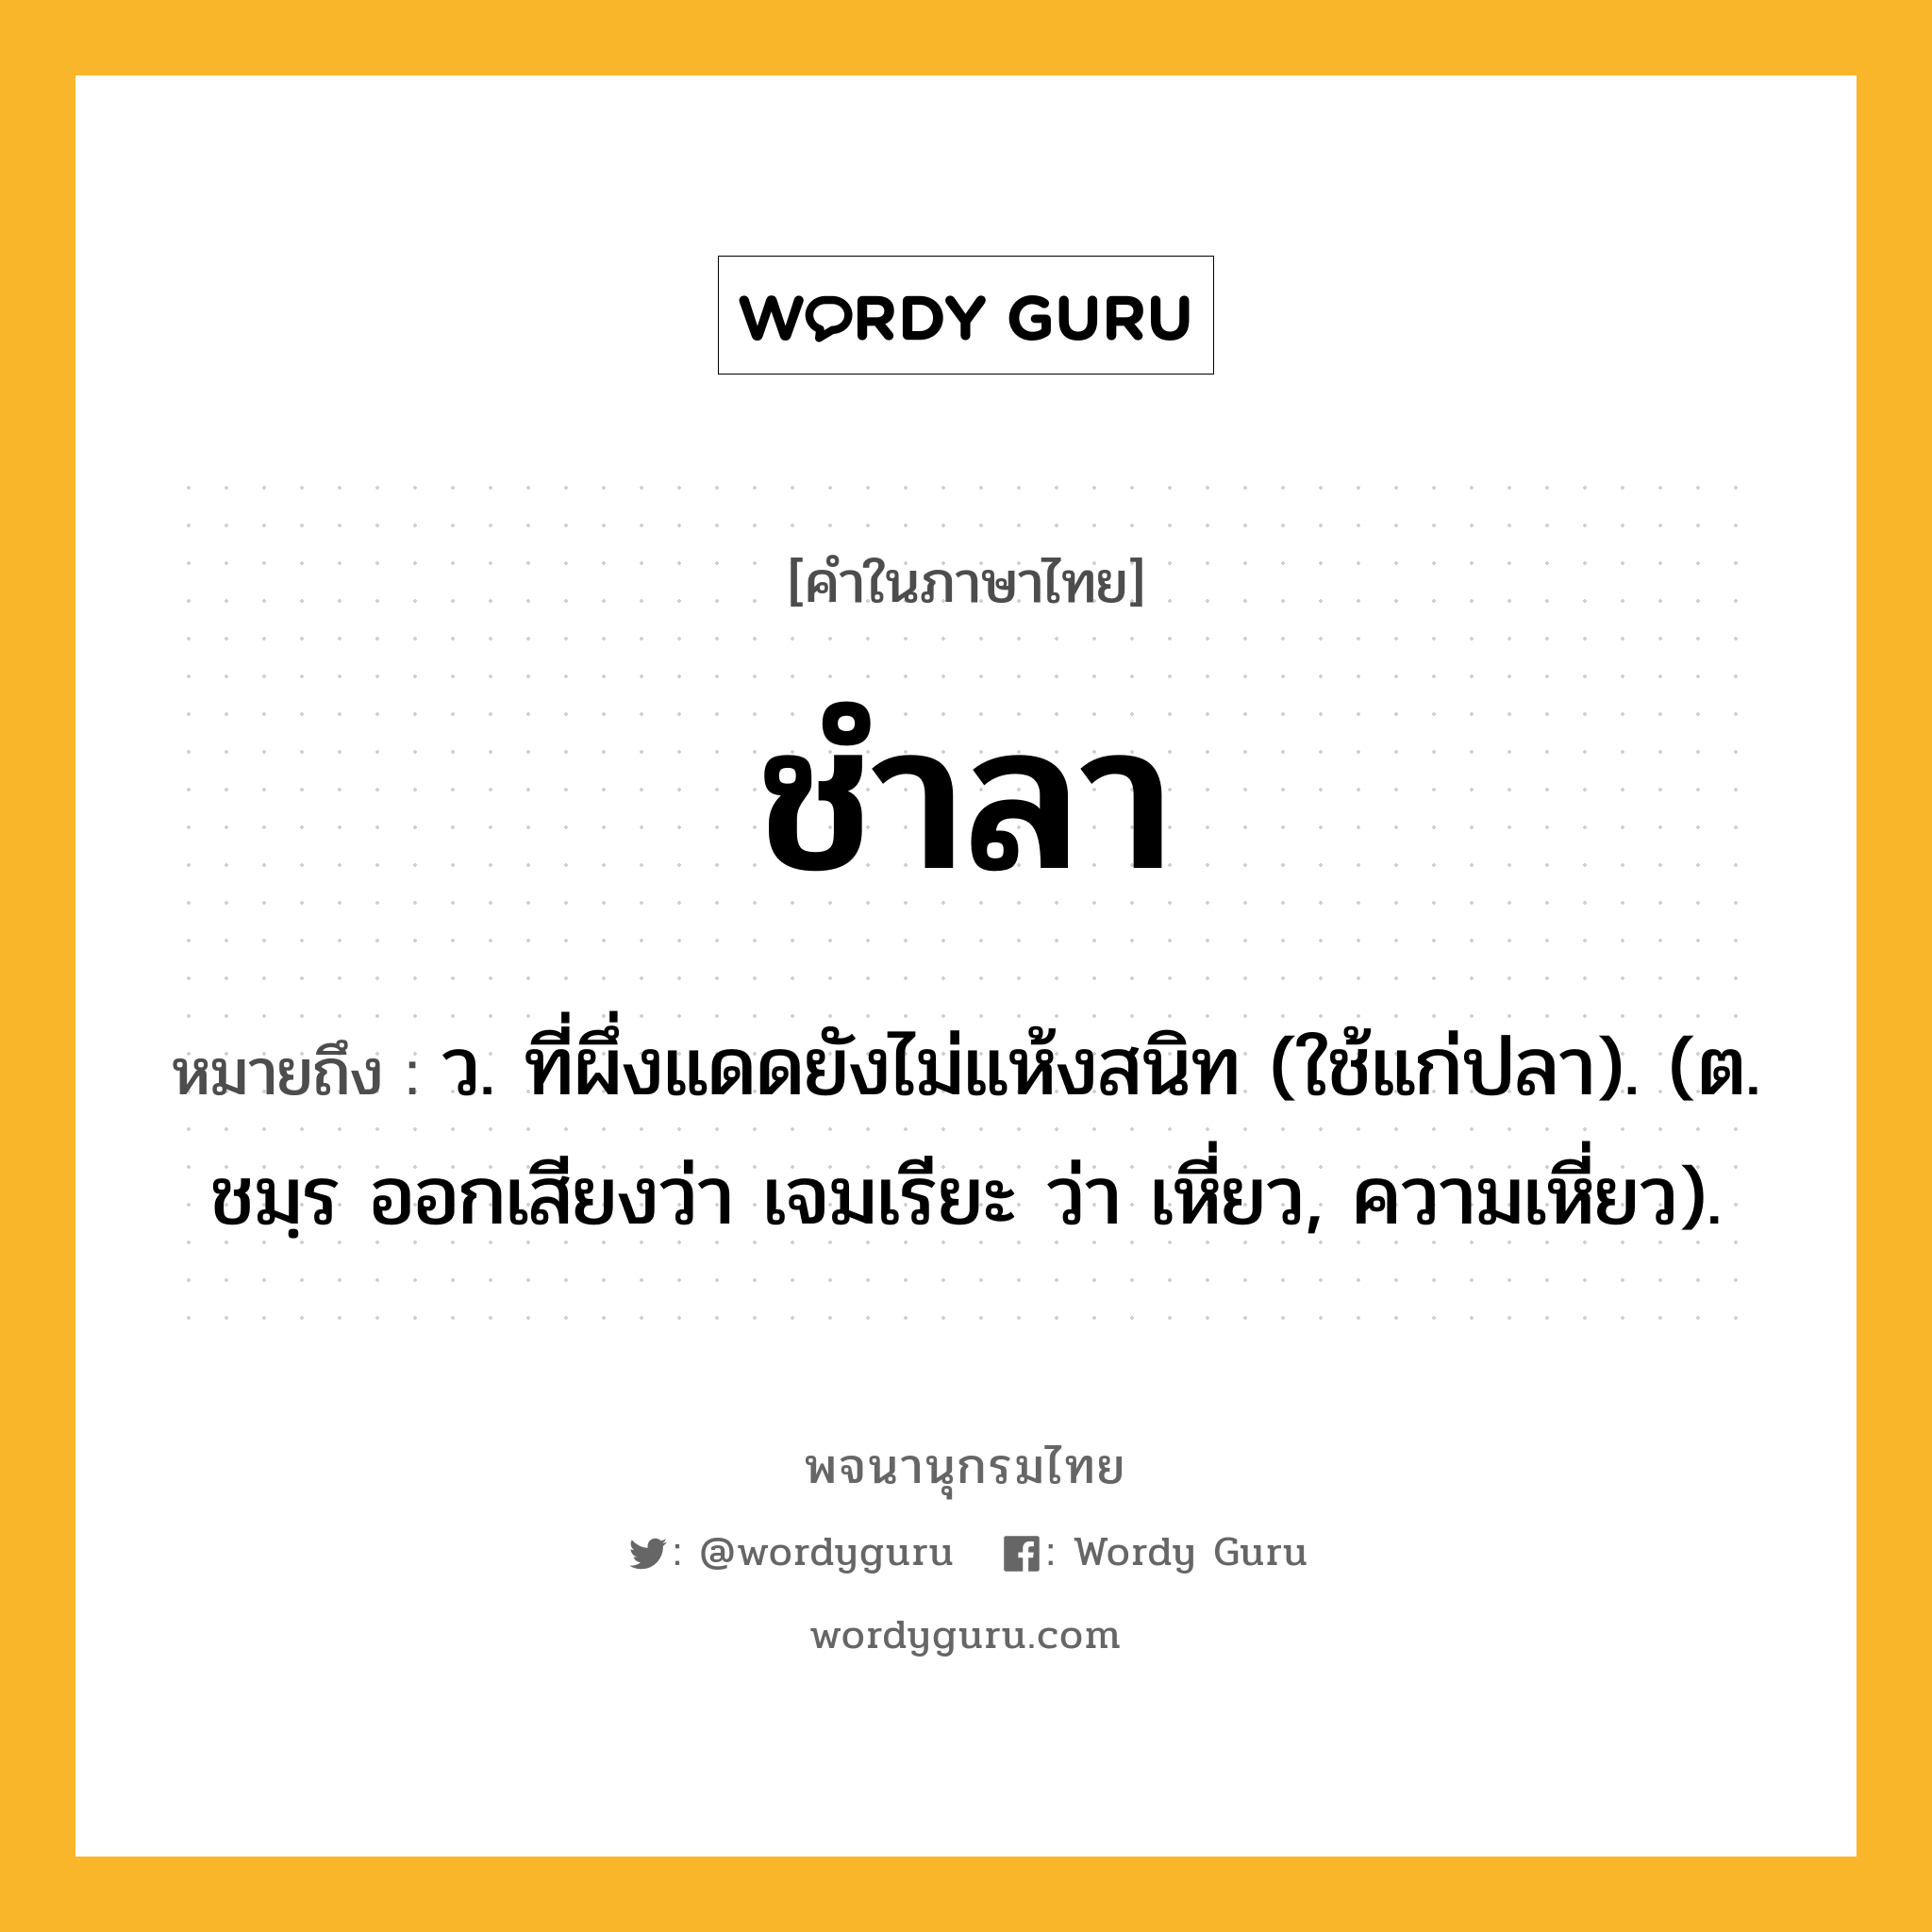 ชำลา ความหมาย หมายถึงอะไร?, คำในภาษาไทย ชำลา หมายถึง ว. ที่ผึ่งแดดยังไม่แห้งสนิท (ใช้แก่ปลา). (ต. ชมฺร ออกเสียงว่า เจมเรียะ ว่า เหี่ยว, ความเหี่ยว).